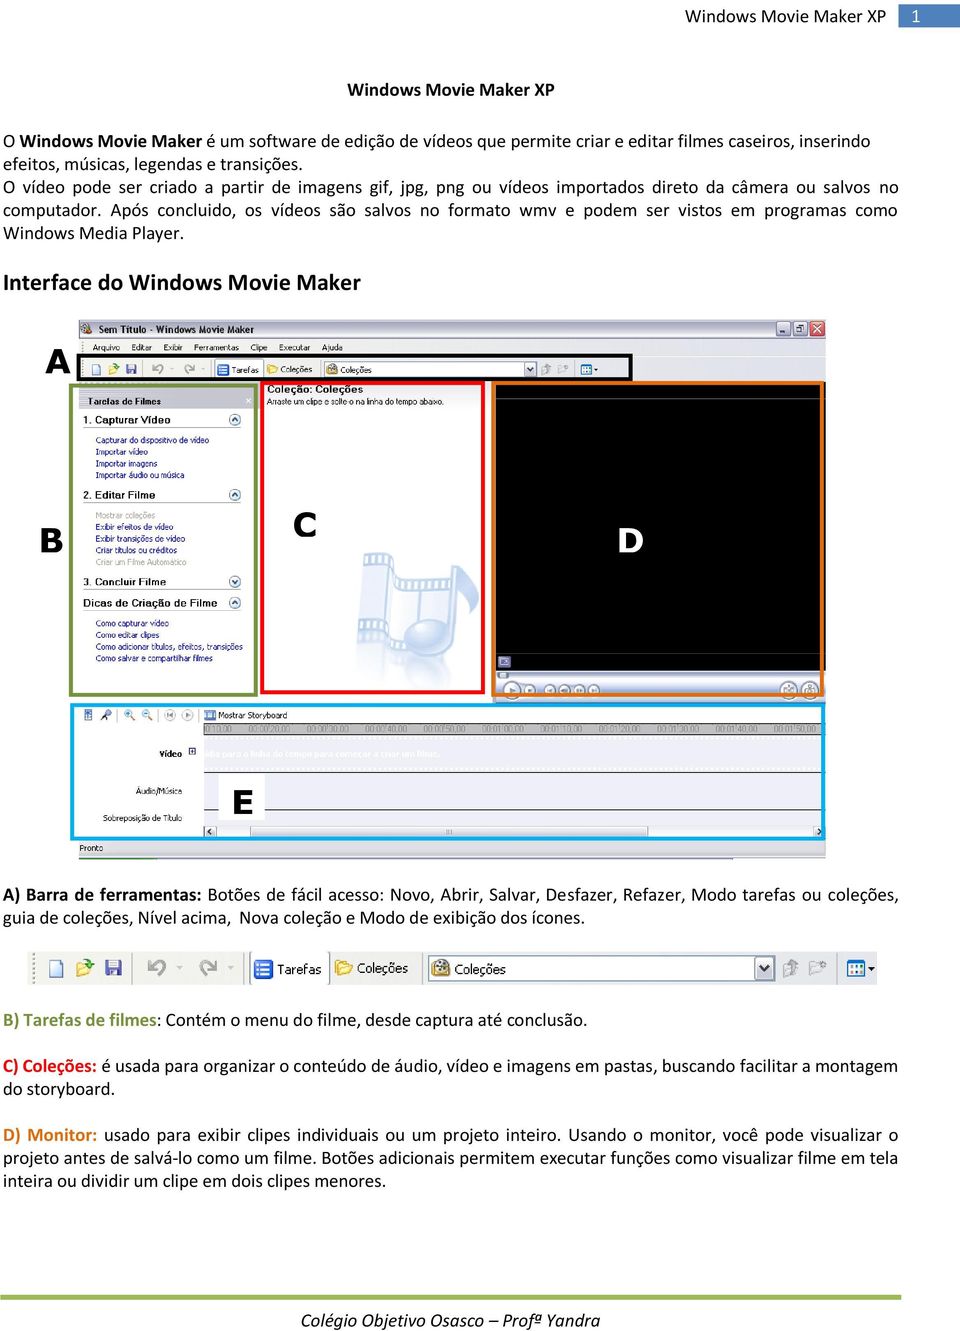 Após concluido, os vídeos são salvos no formato wmv e podem ser vistos em programas como Windows Media Player.